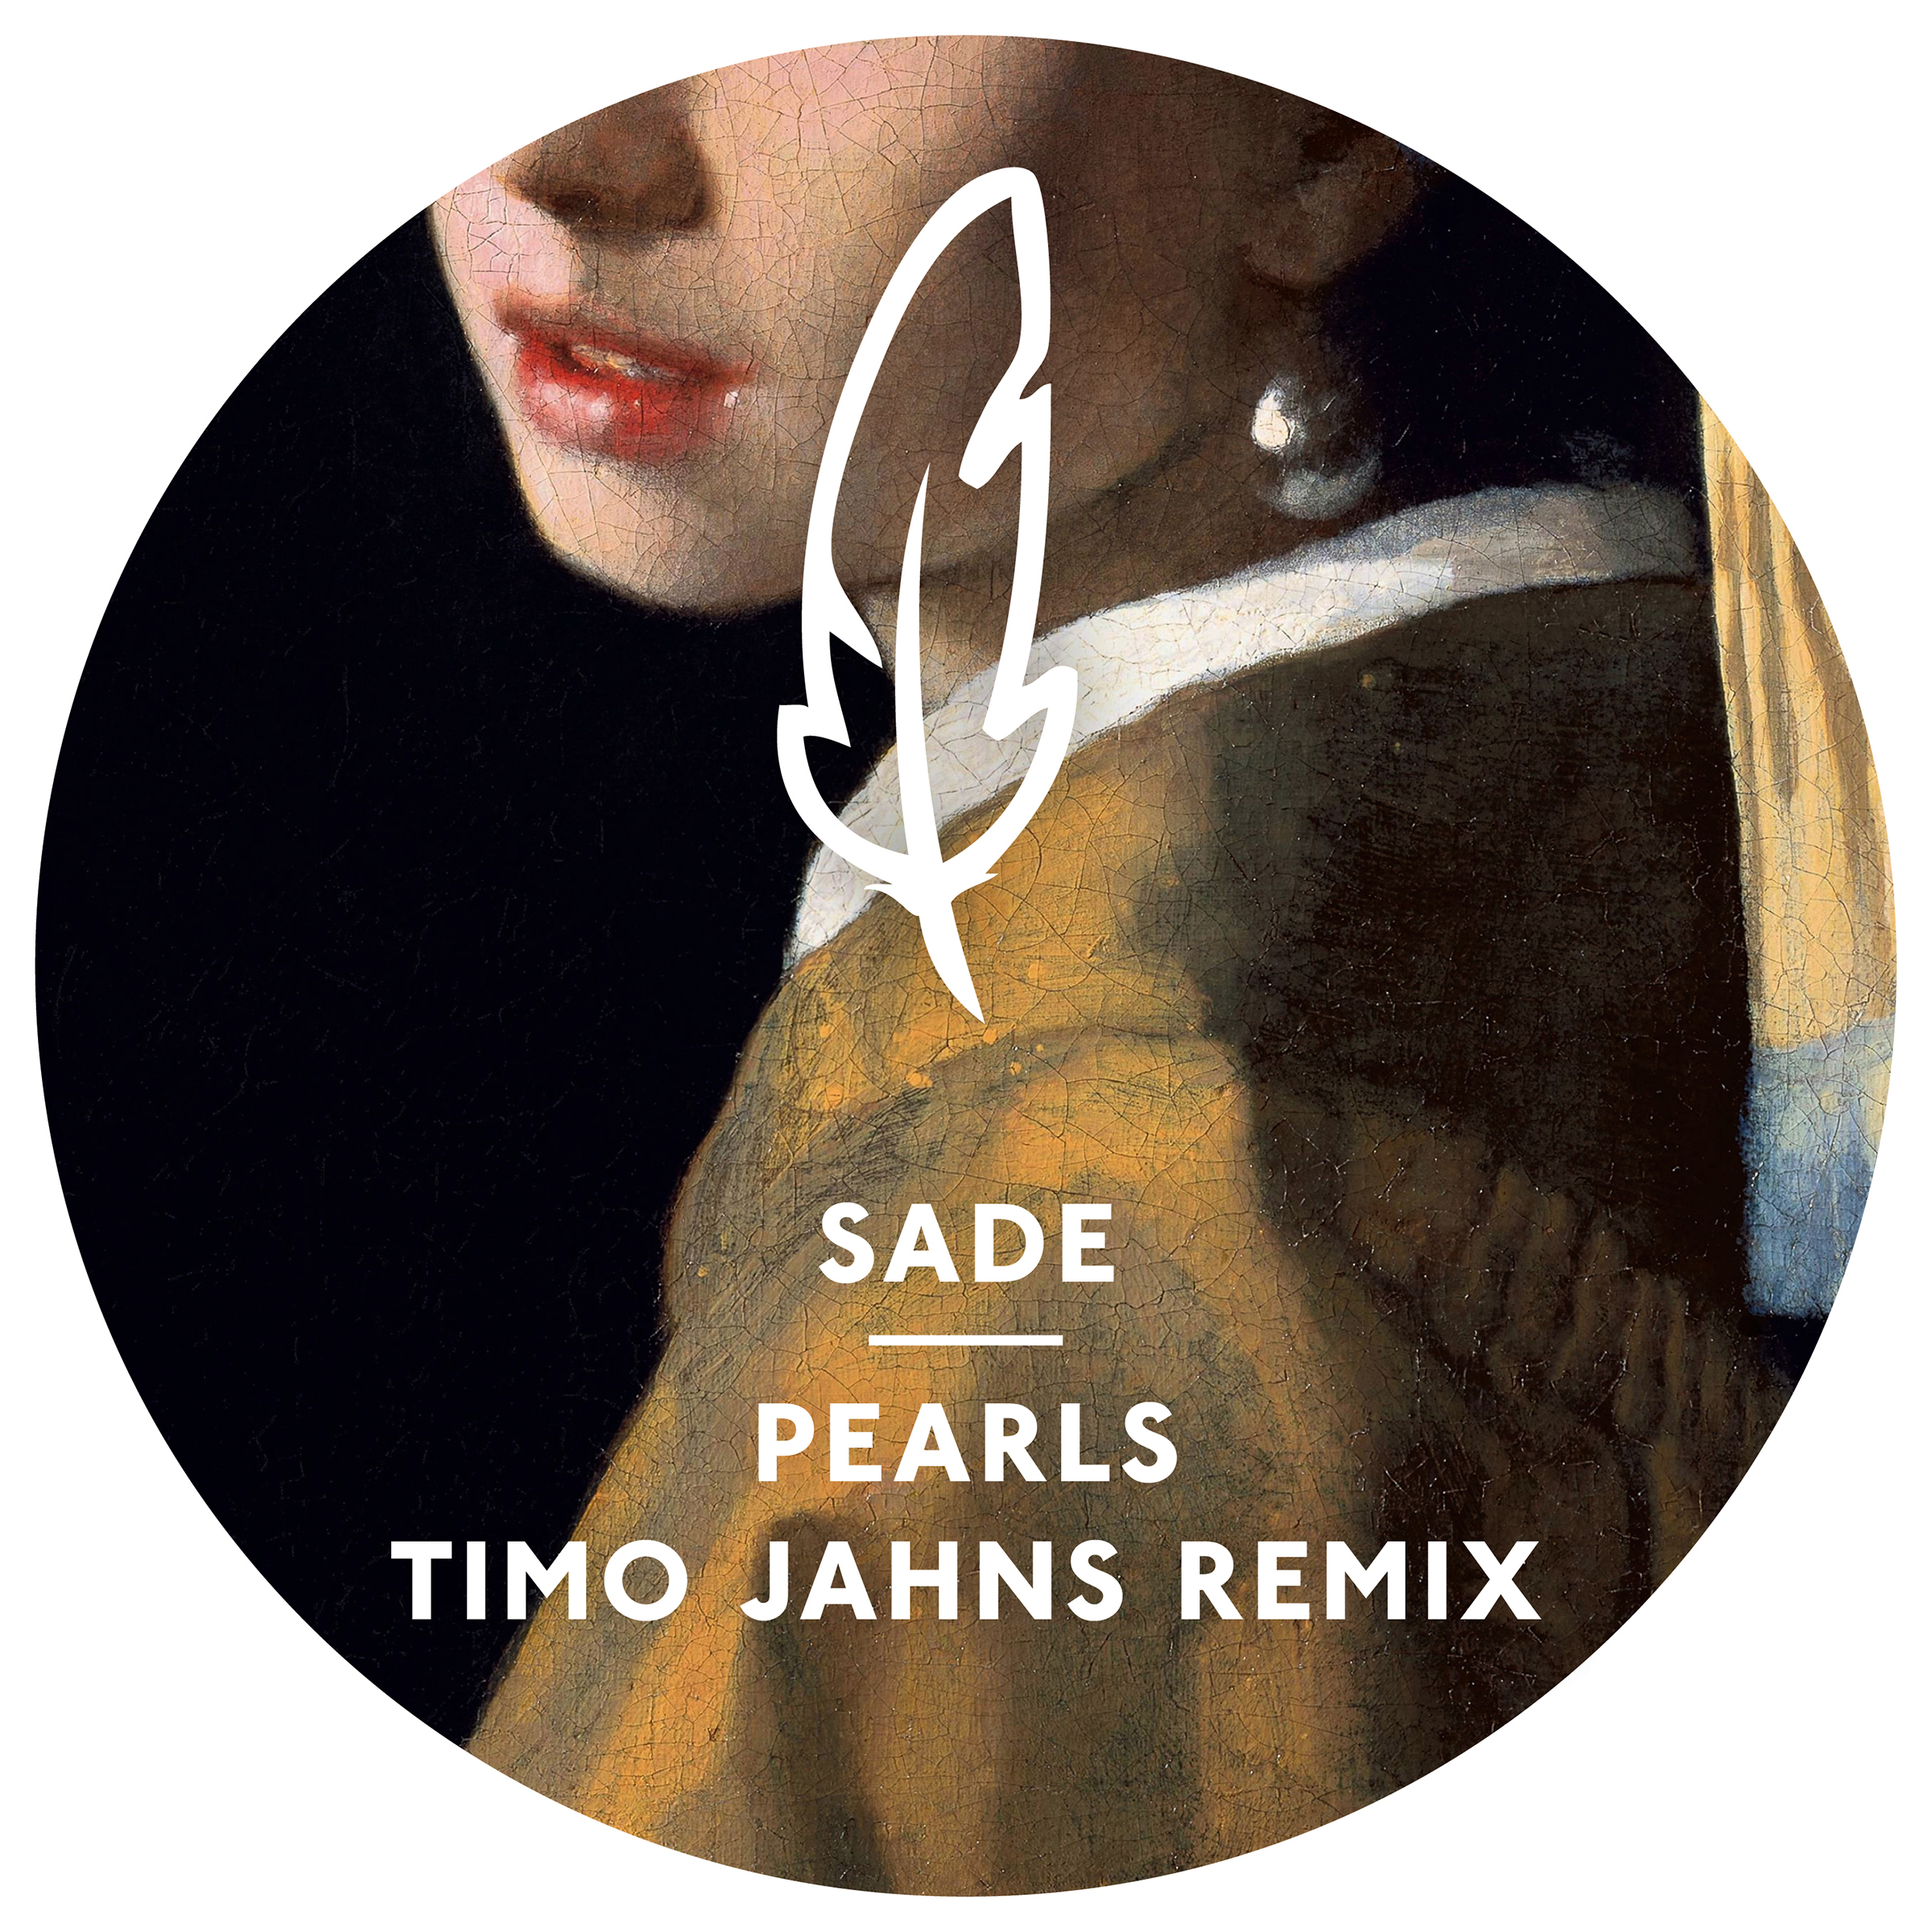 Sade - Pearls (Timo Jahns Remix)